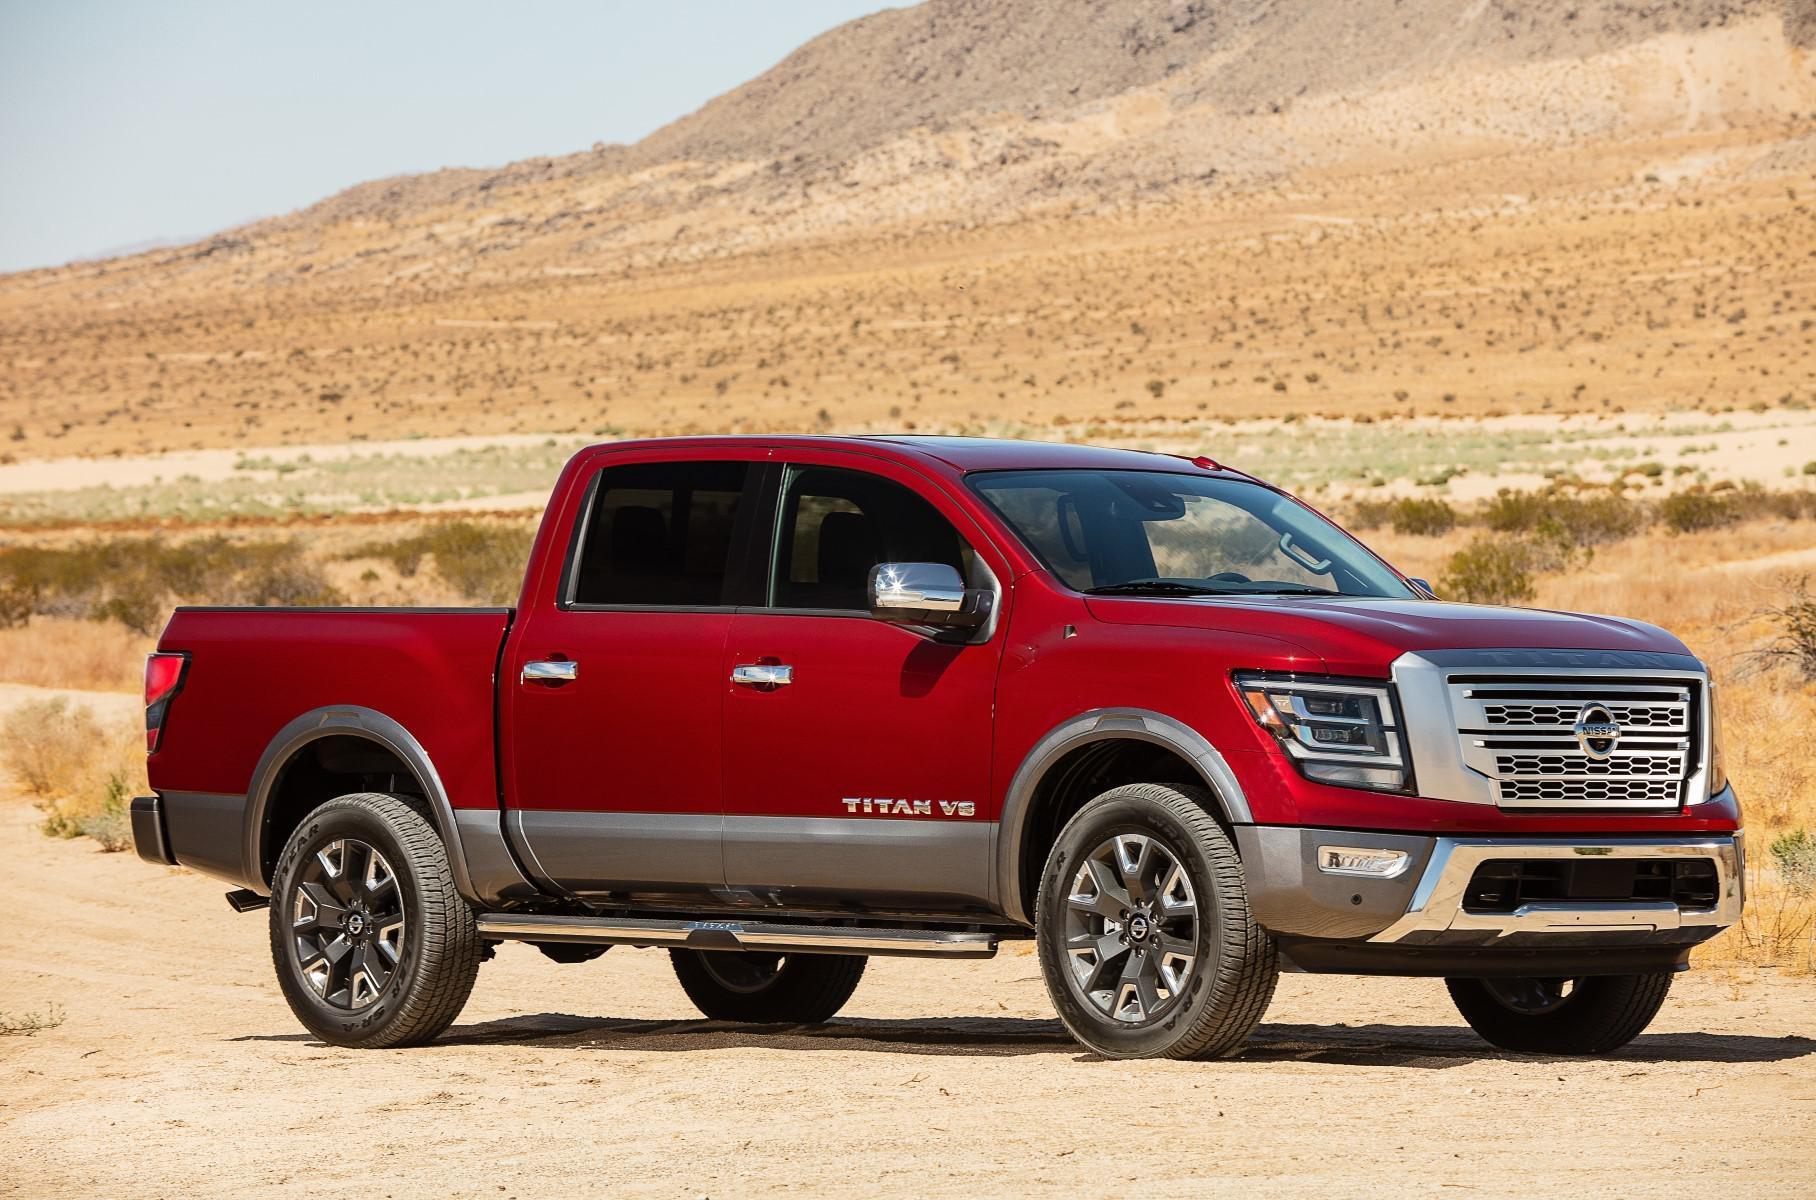 Понаехали: Toyota Tundra и другие «неамериканские» пикапы в Штатах